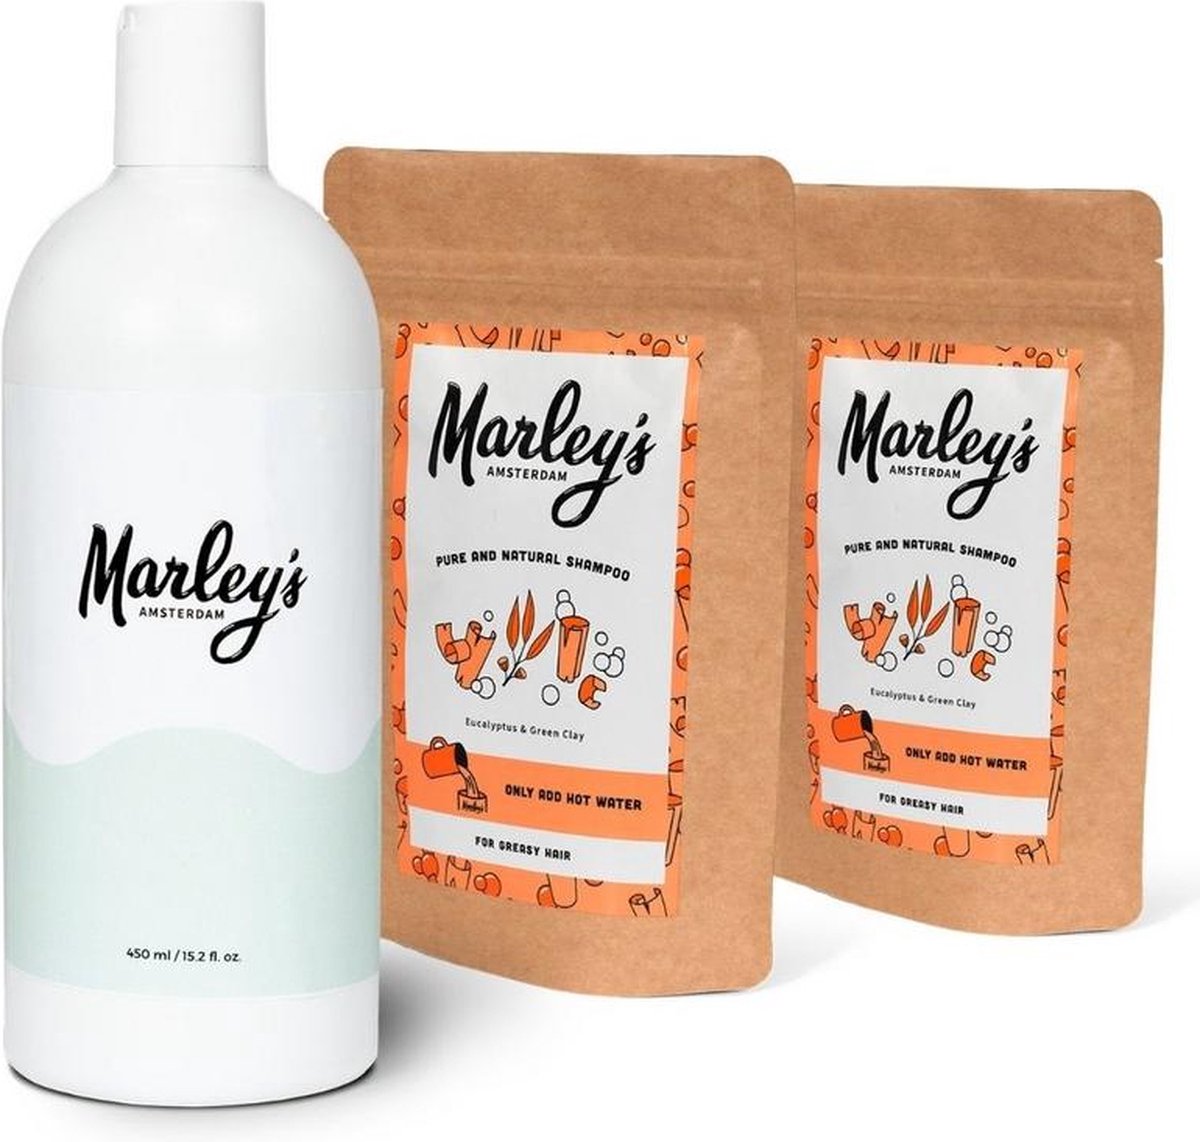 Marley's Shampoovlokkenpakket Eucalyptus En Groene Klei 900 Ml